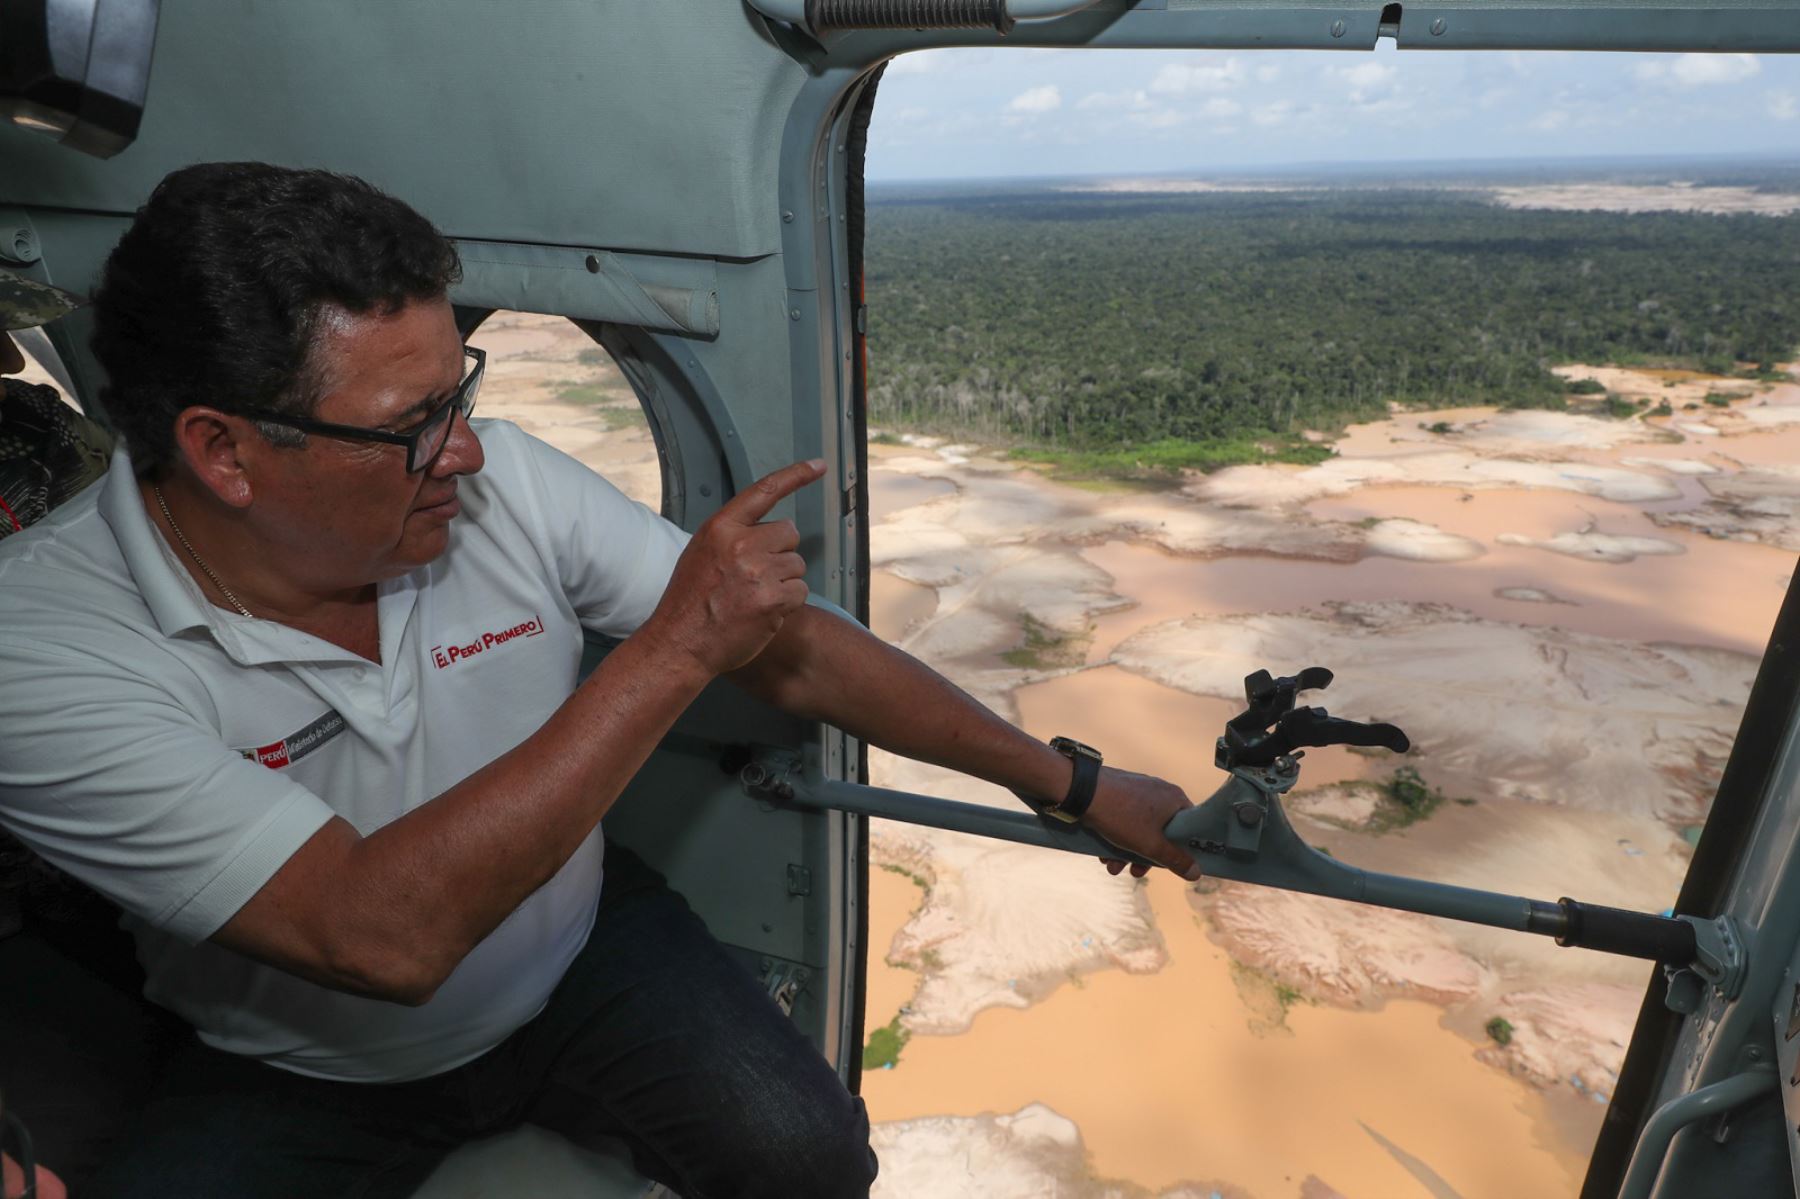 El ministro de Defensa, José Huerta, anunció hoy la creación de la brigada de protección de la Amazonía, que se instalará en la zona de "La Pampa”, región Madre de Dios.